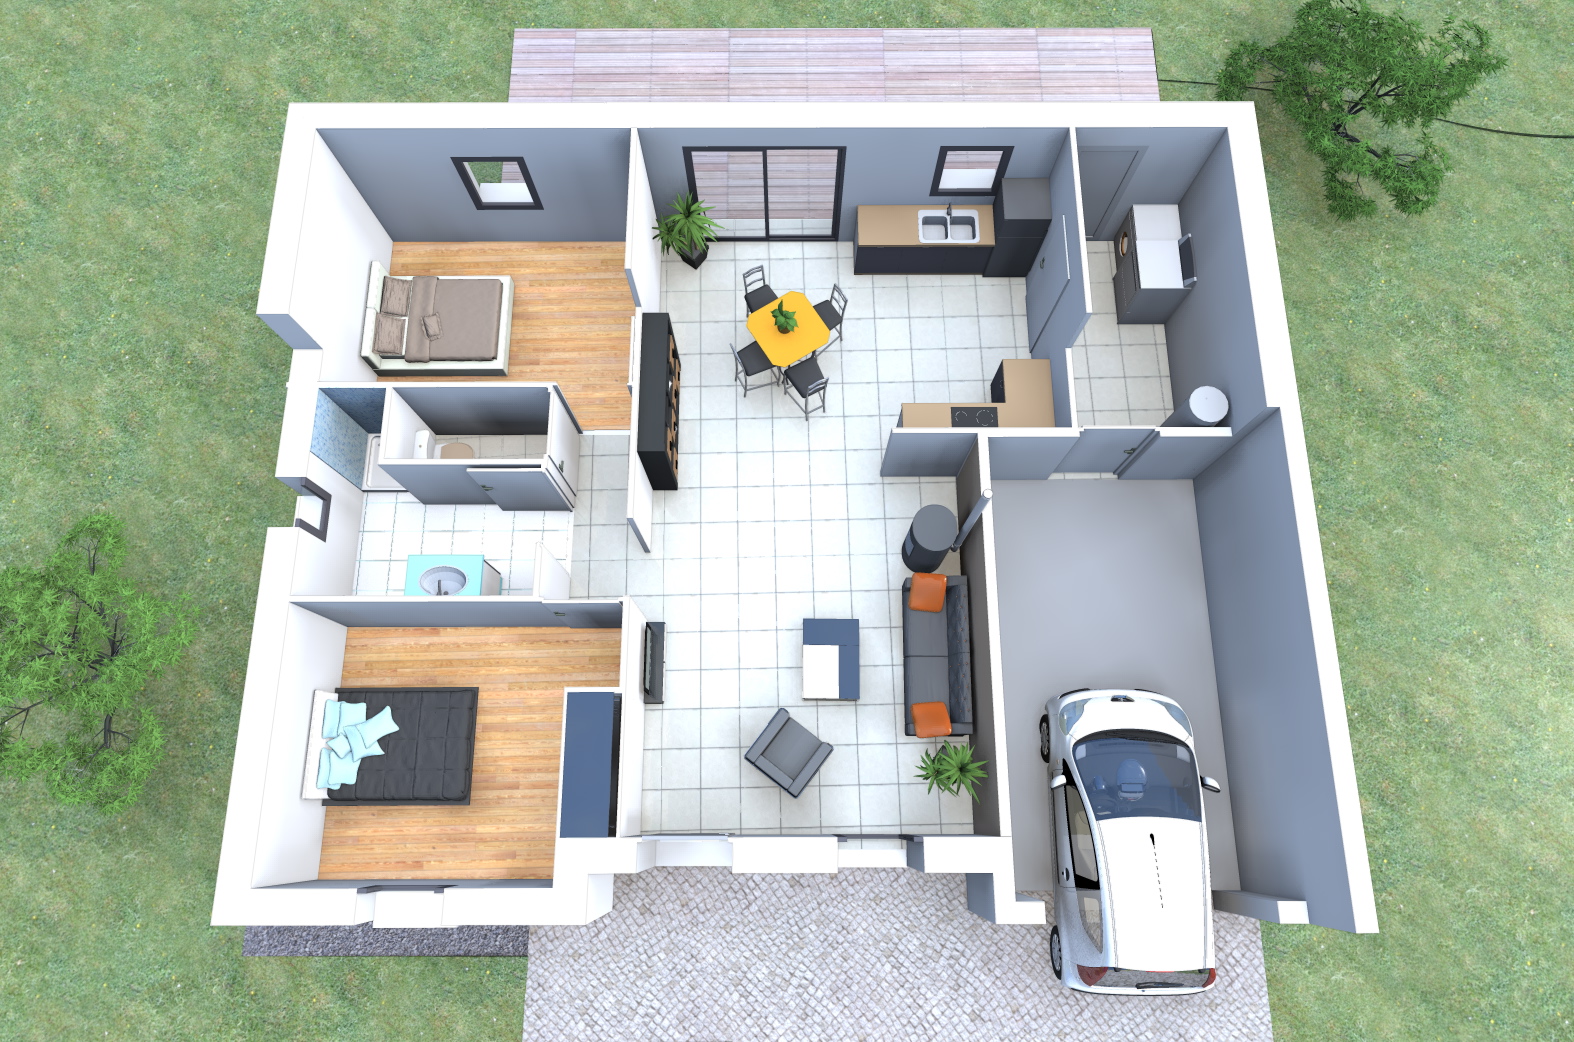 Plan de maison plain pied 2 chambres et garage